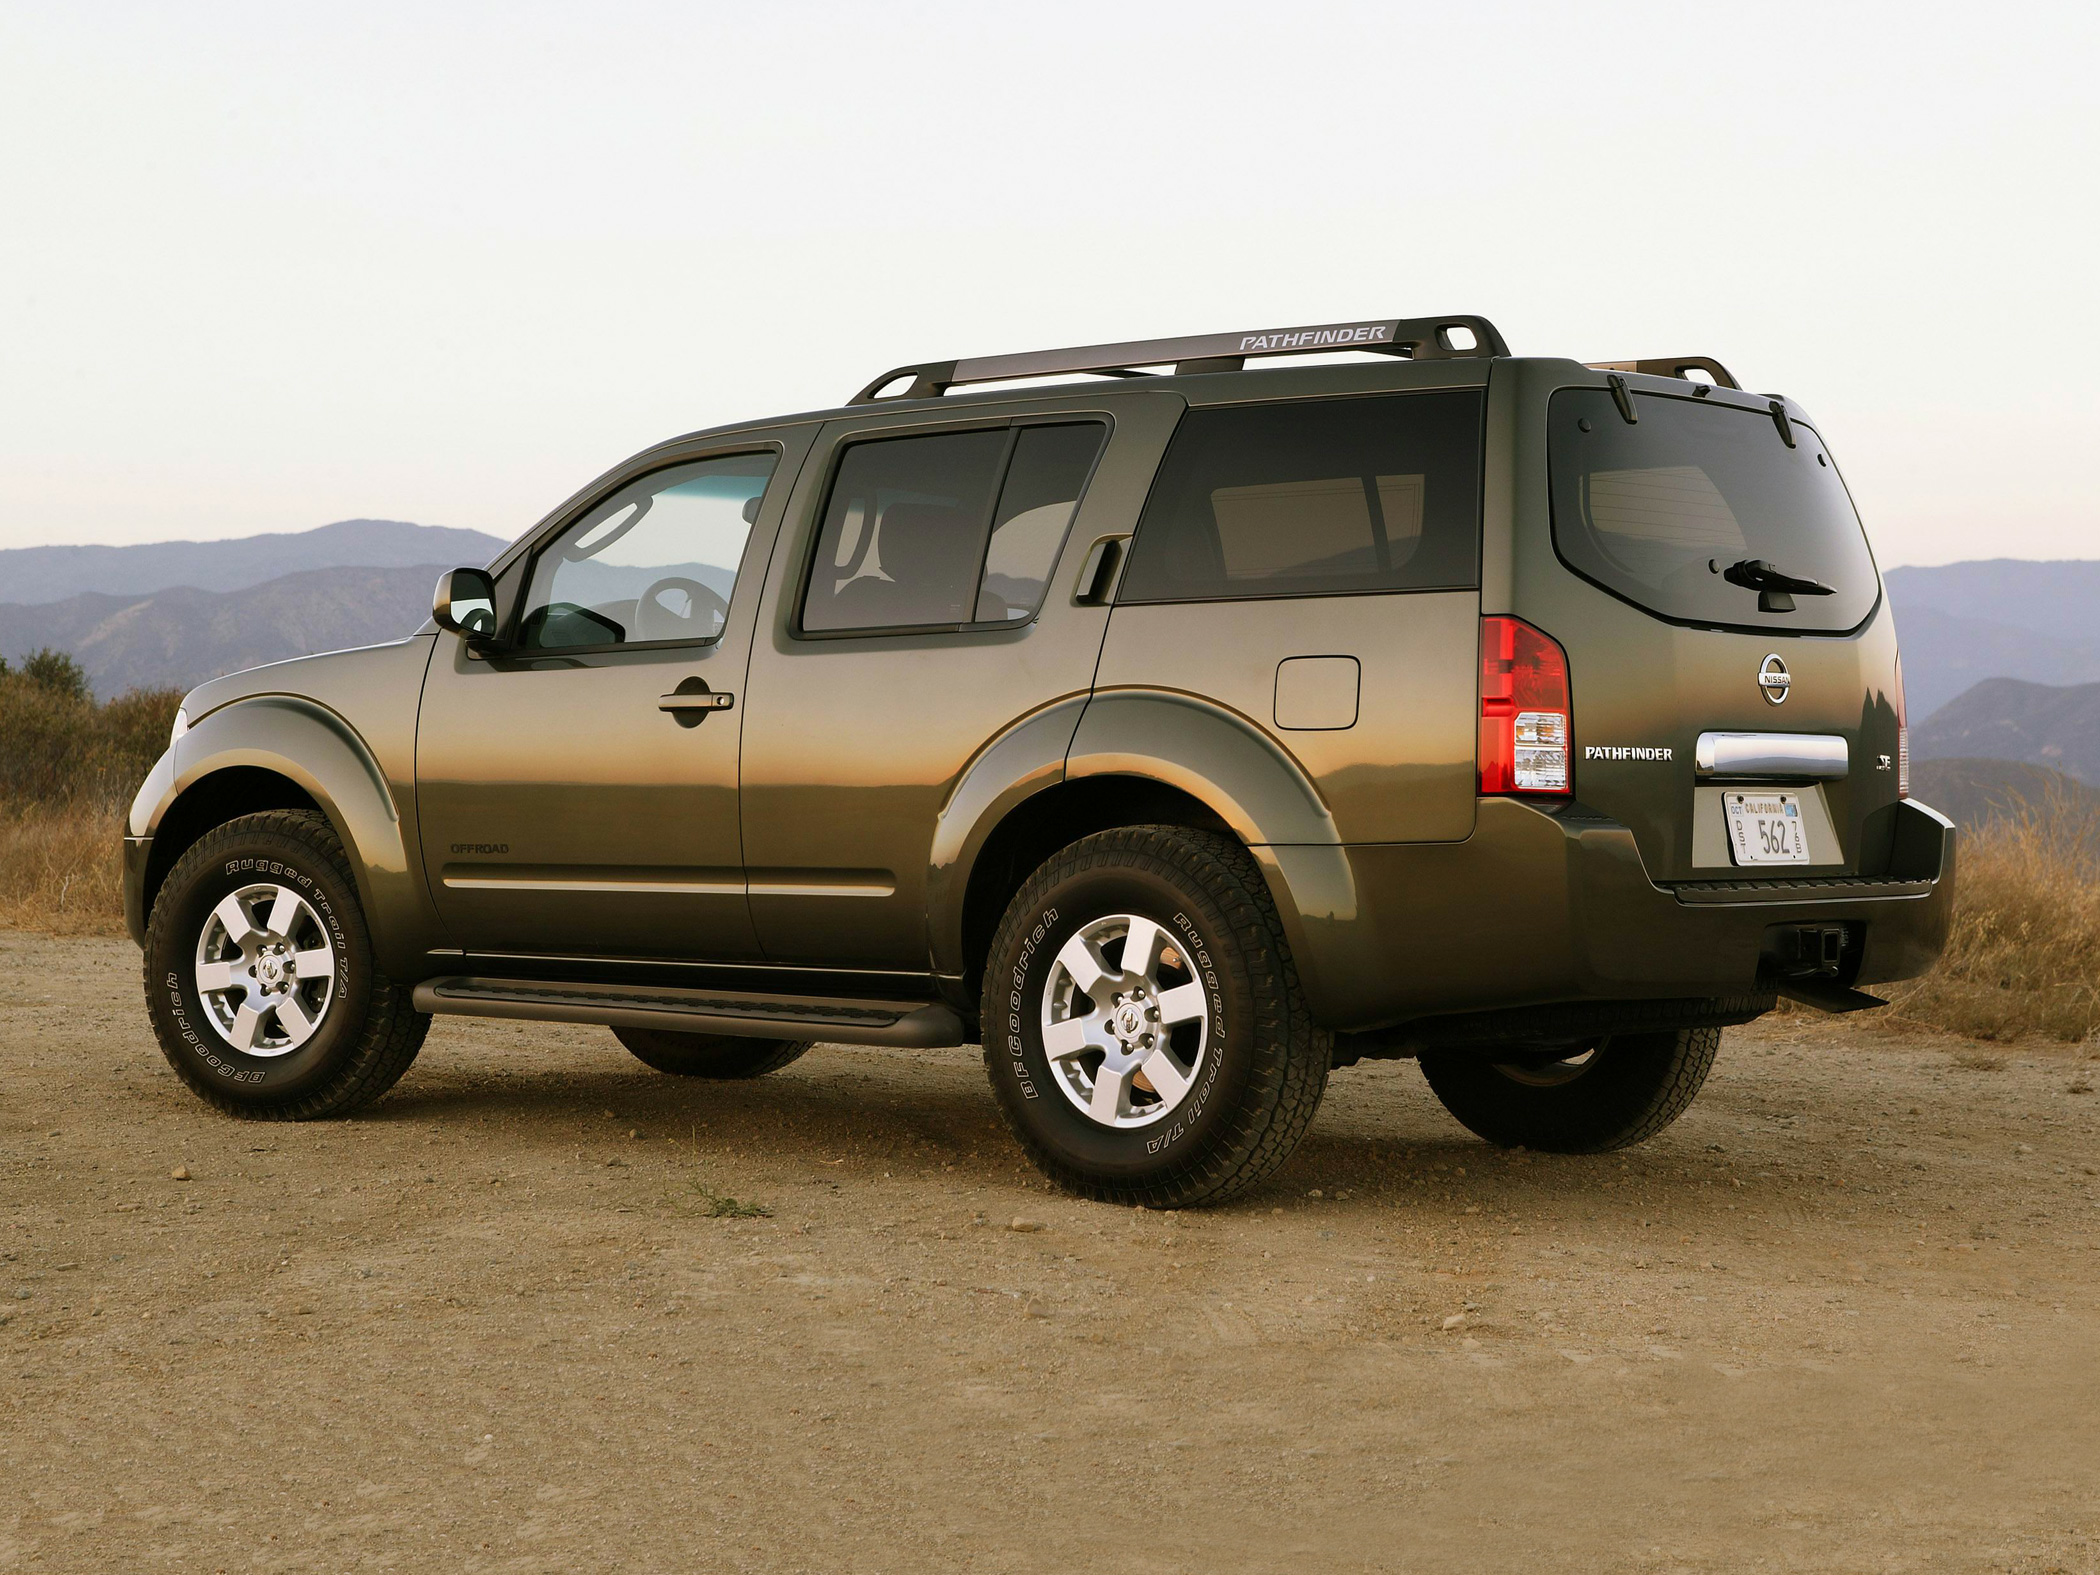 2007 Nissan Pathfinder